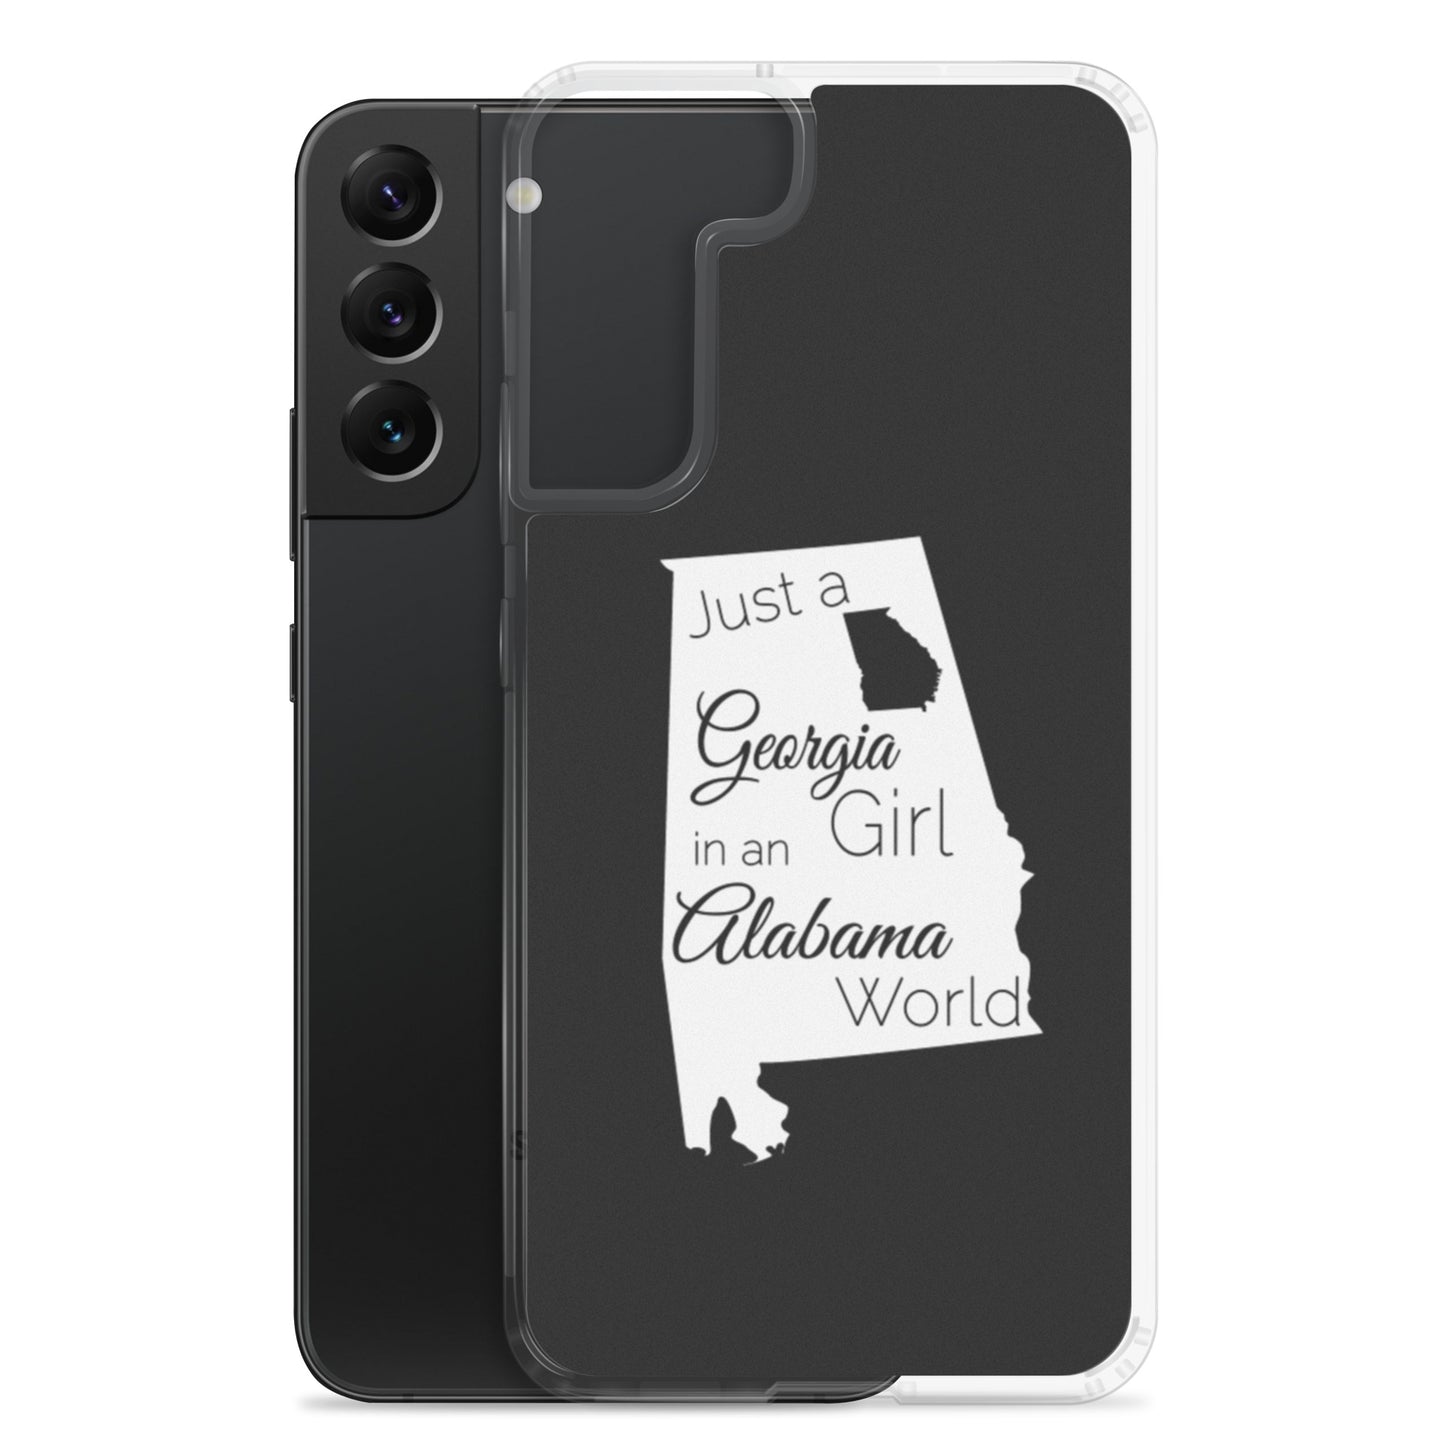 Just a Georgia Girl in an Alabama World Samsung Case